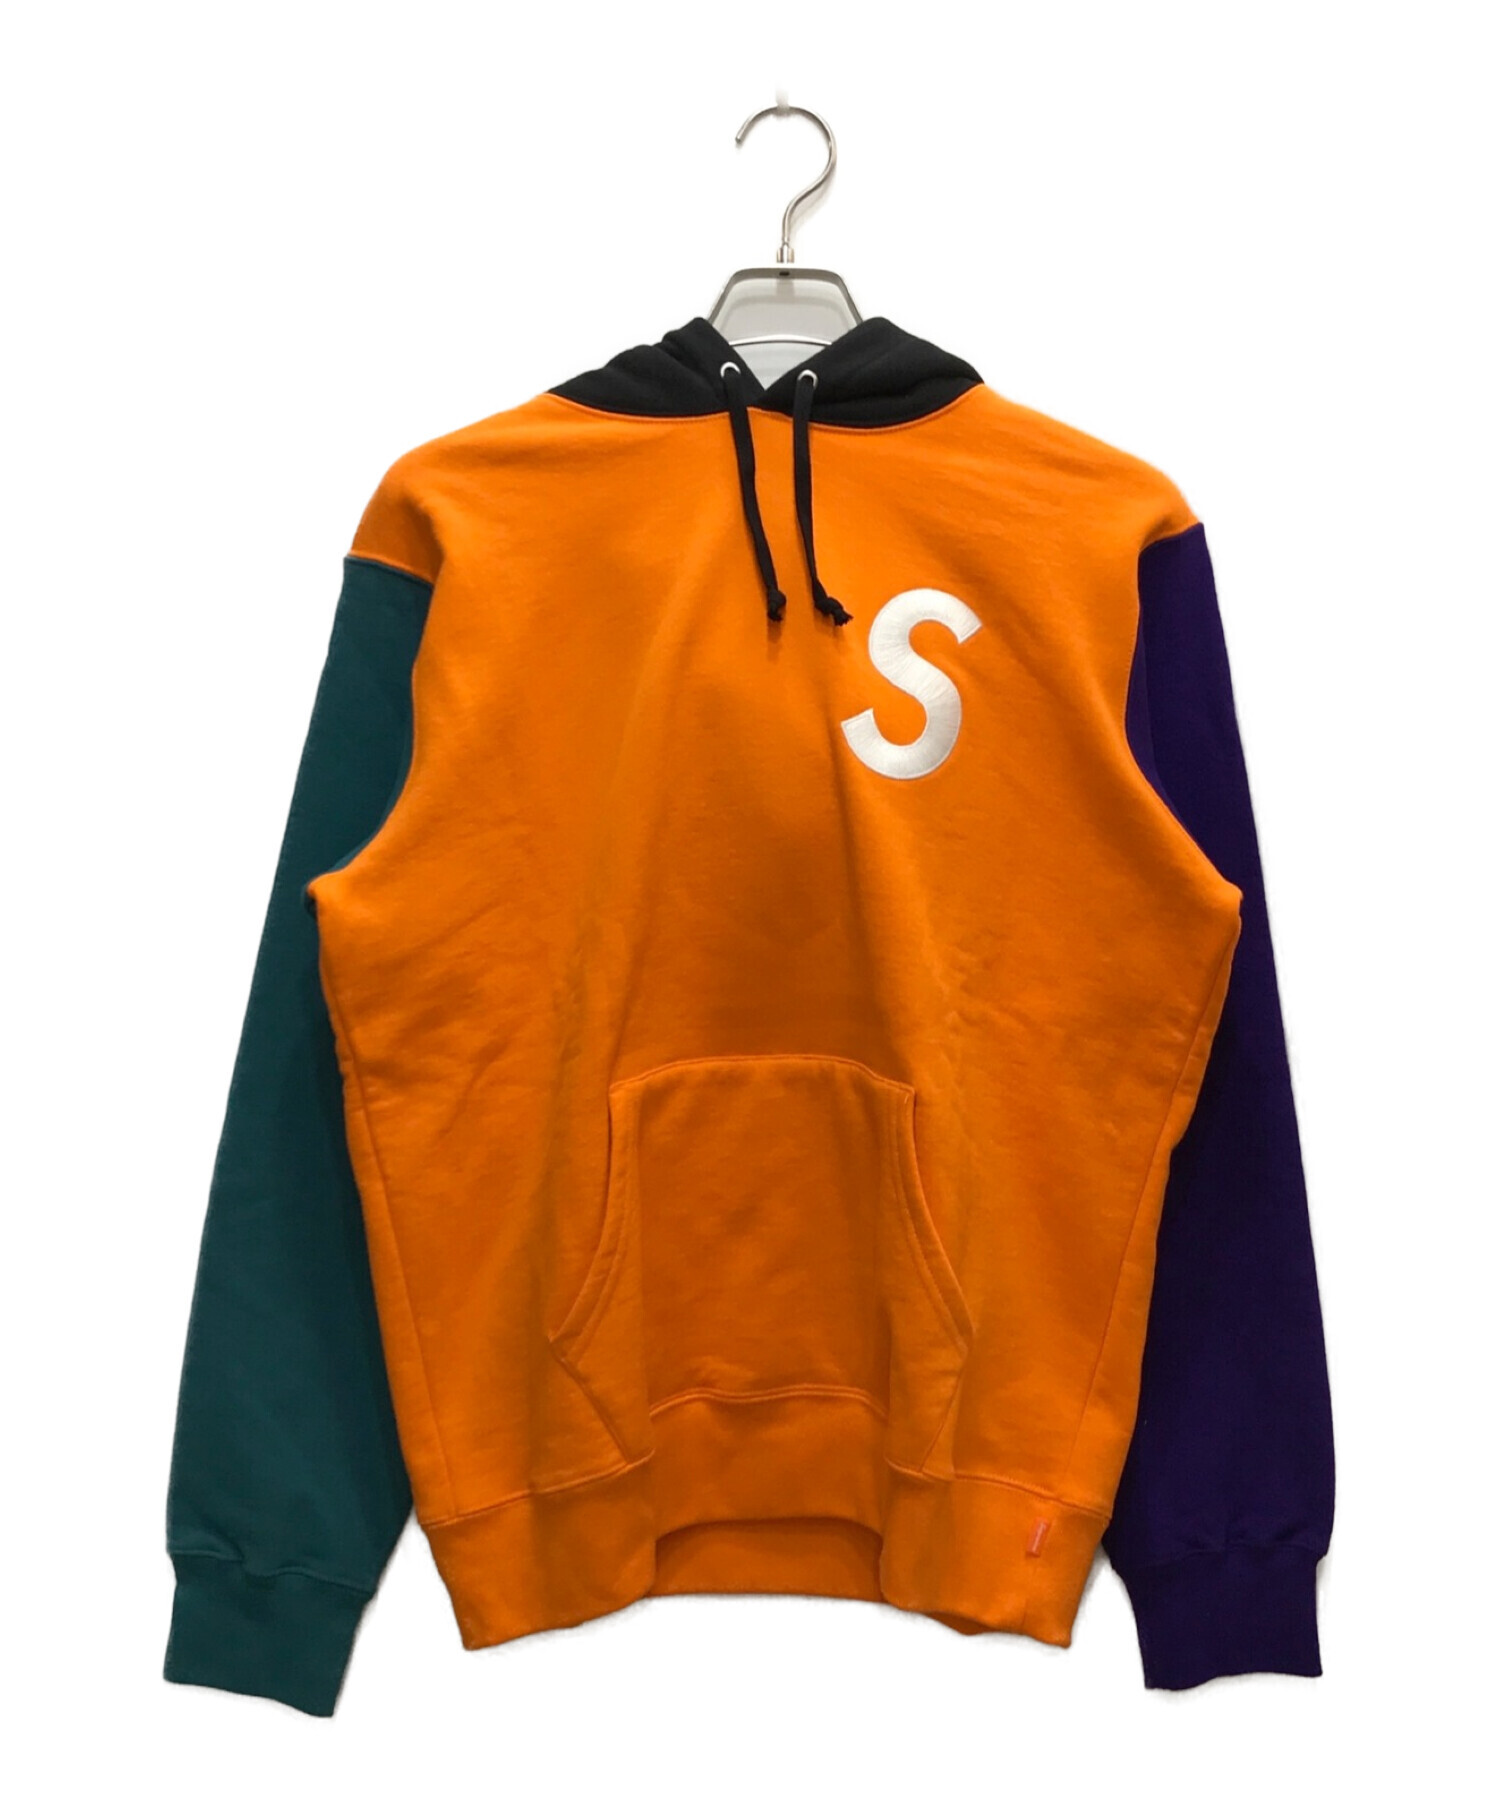 SUPREME (シュプリーム) S Logo Colorblocked Hooded Sweatshirt オレンジ×ブラック サイズ:M